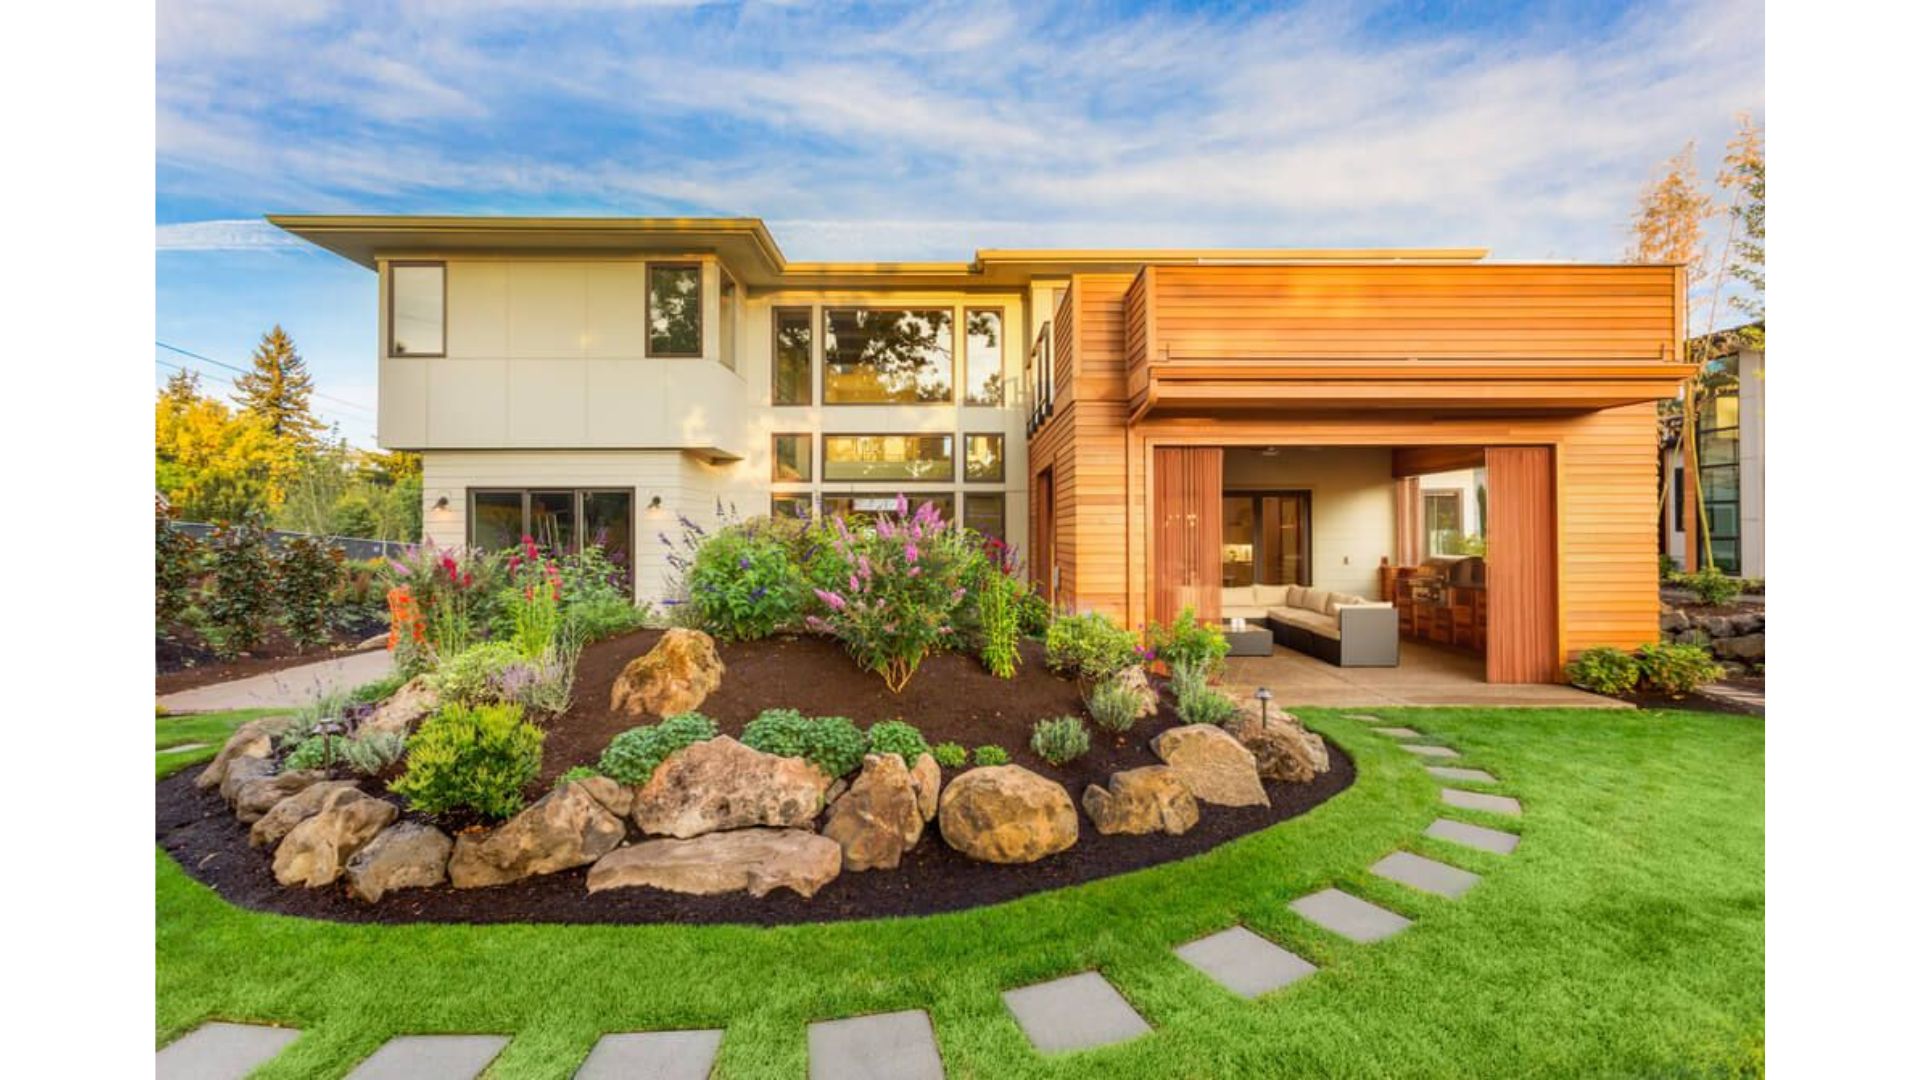 Choose a landscape design that complements the home.